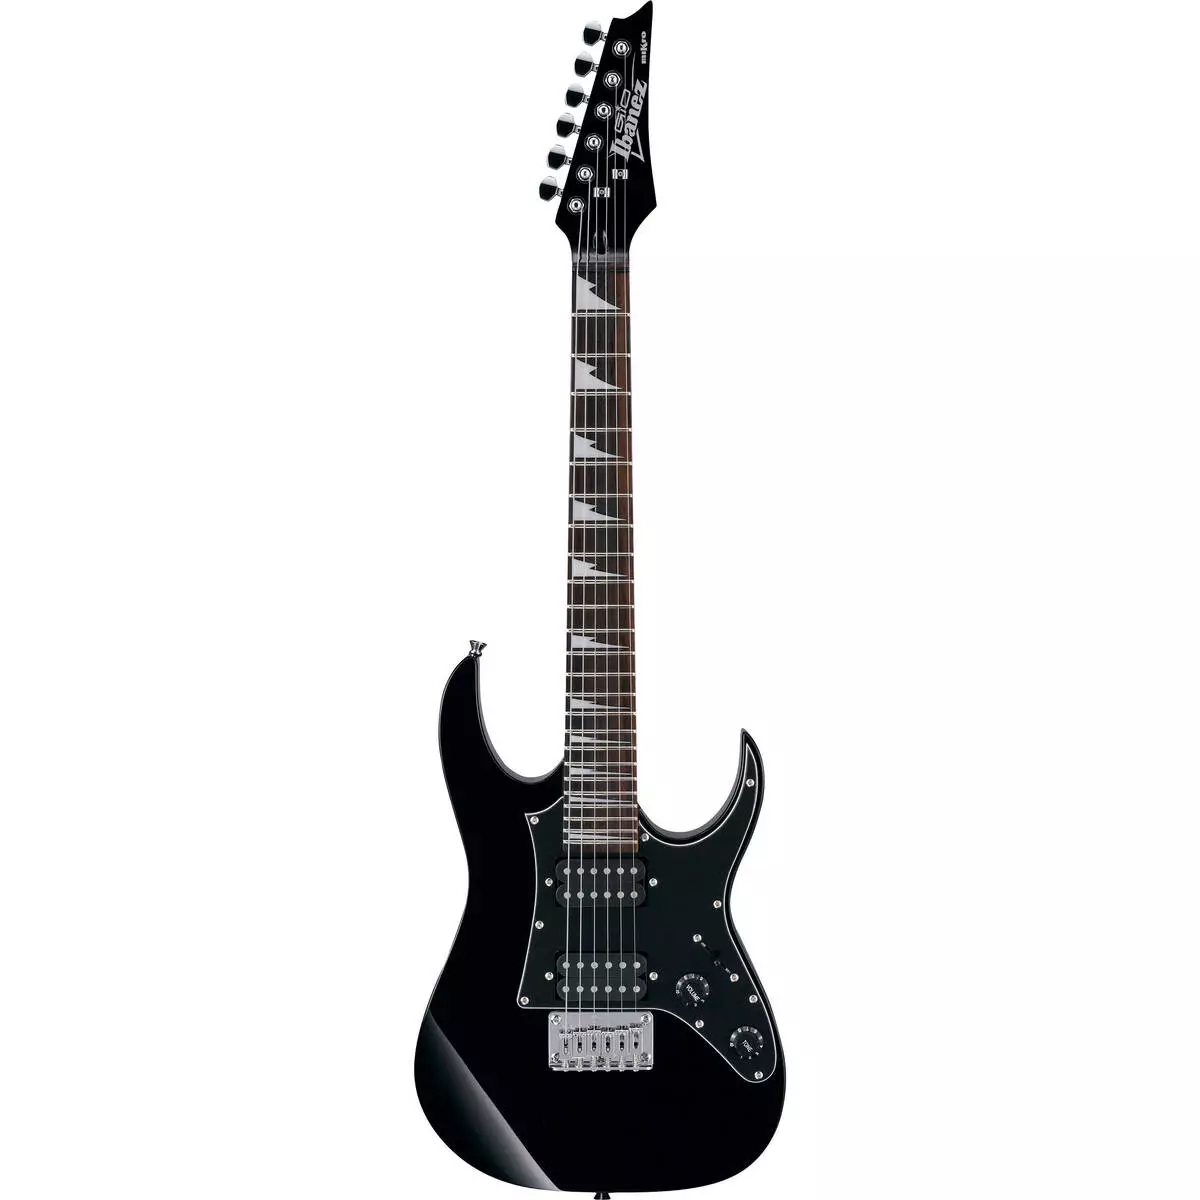 Црна гитара: Класична шест-жица и друга гитара, бела и црвена боја, мат и сјај 26252_11